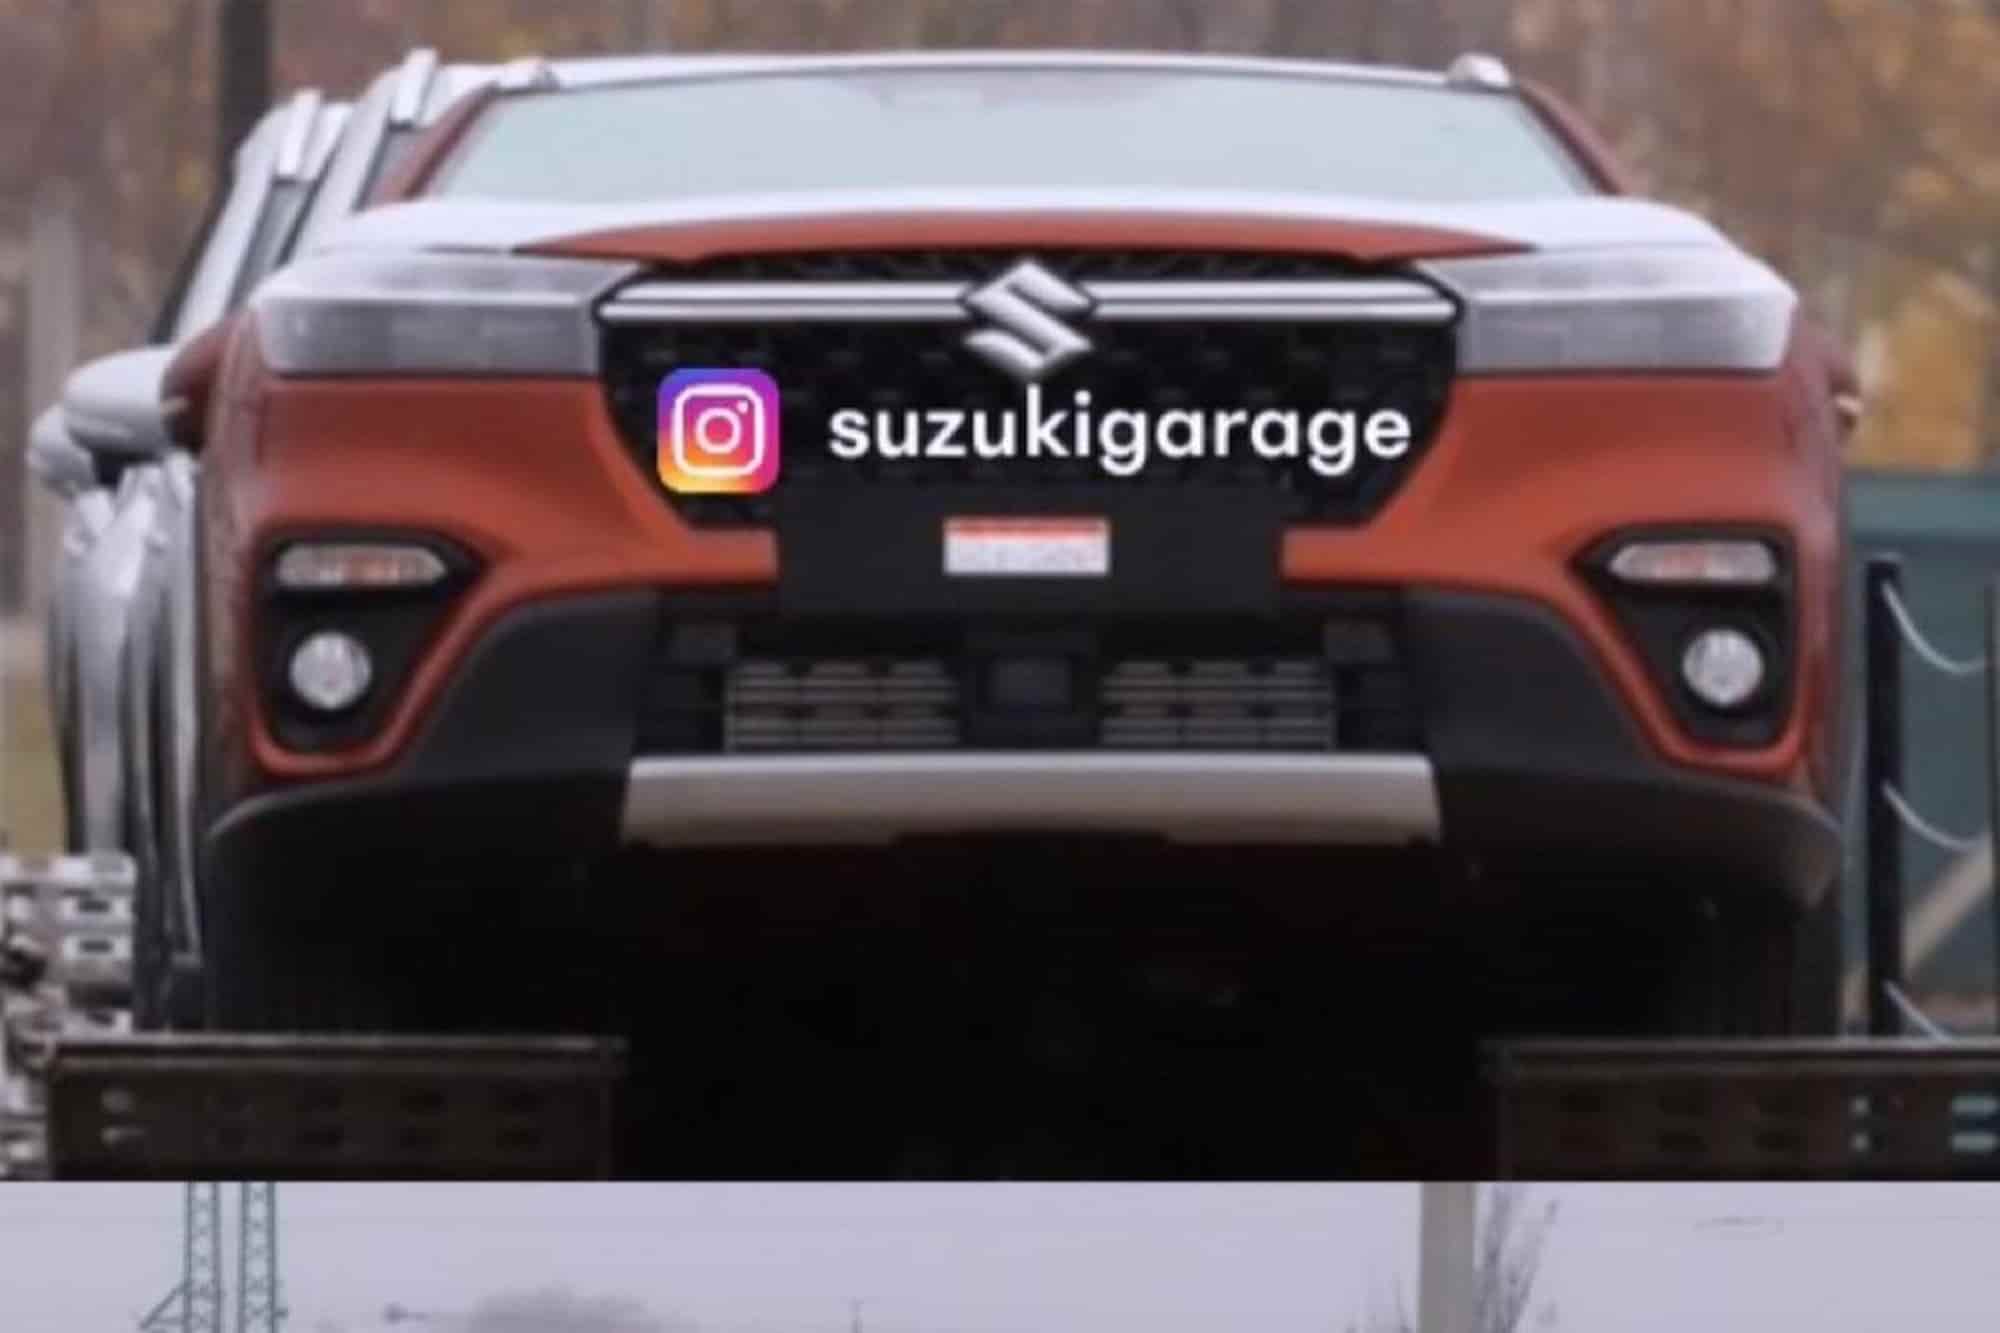 2022 Suzuki S Cross Leaked